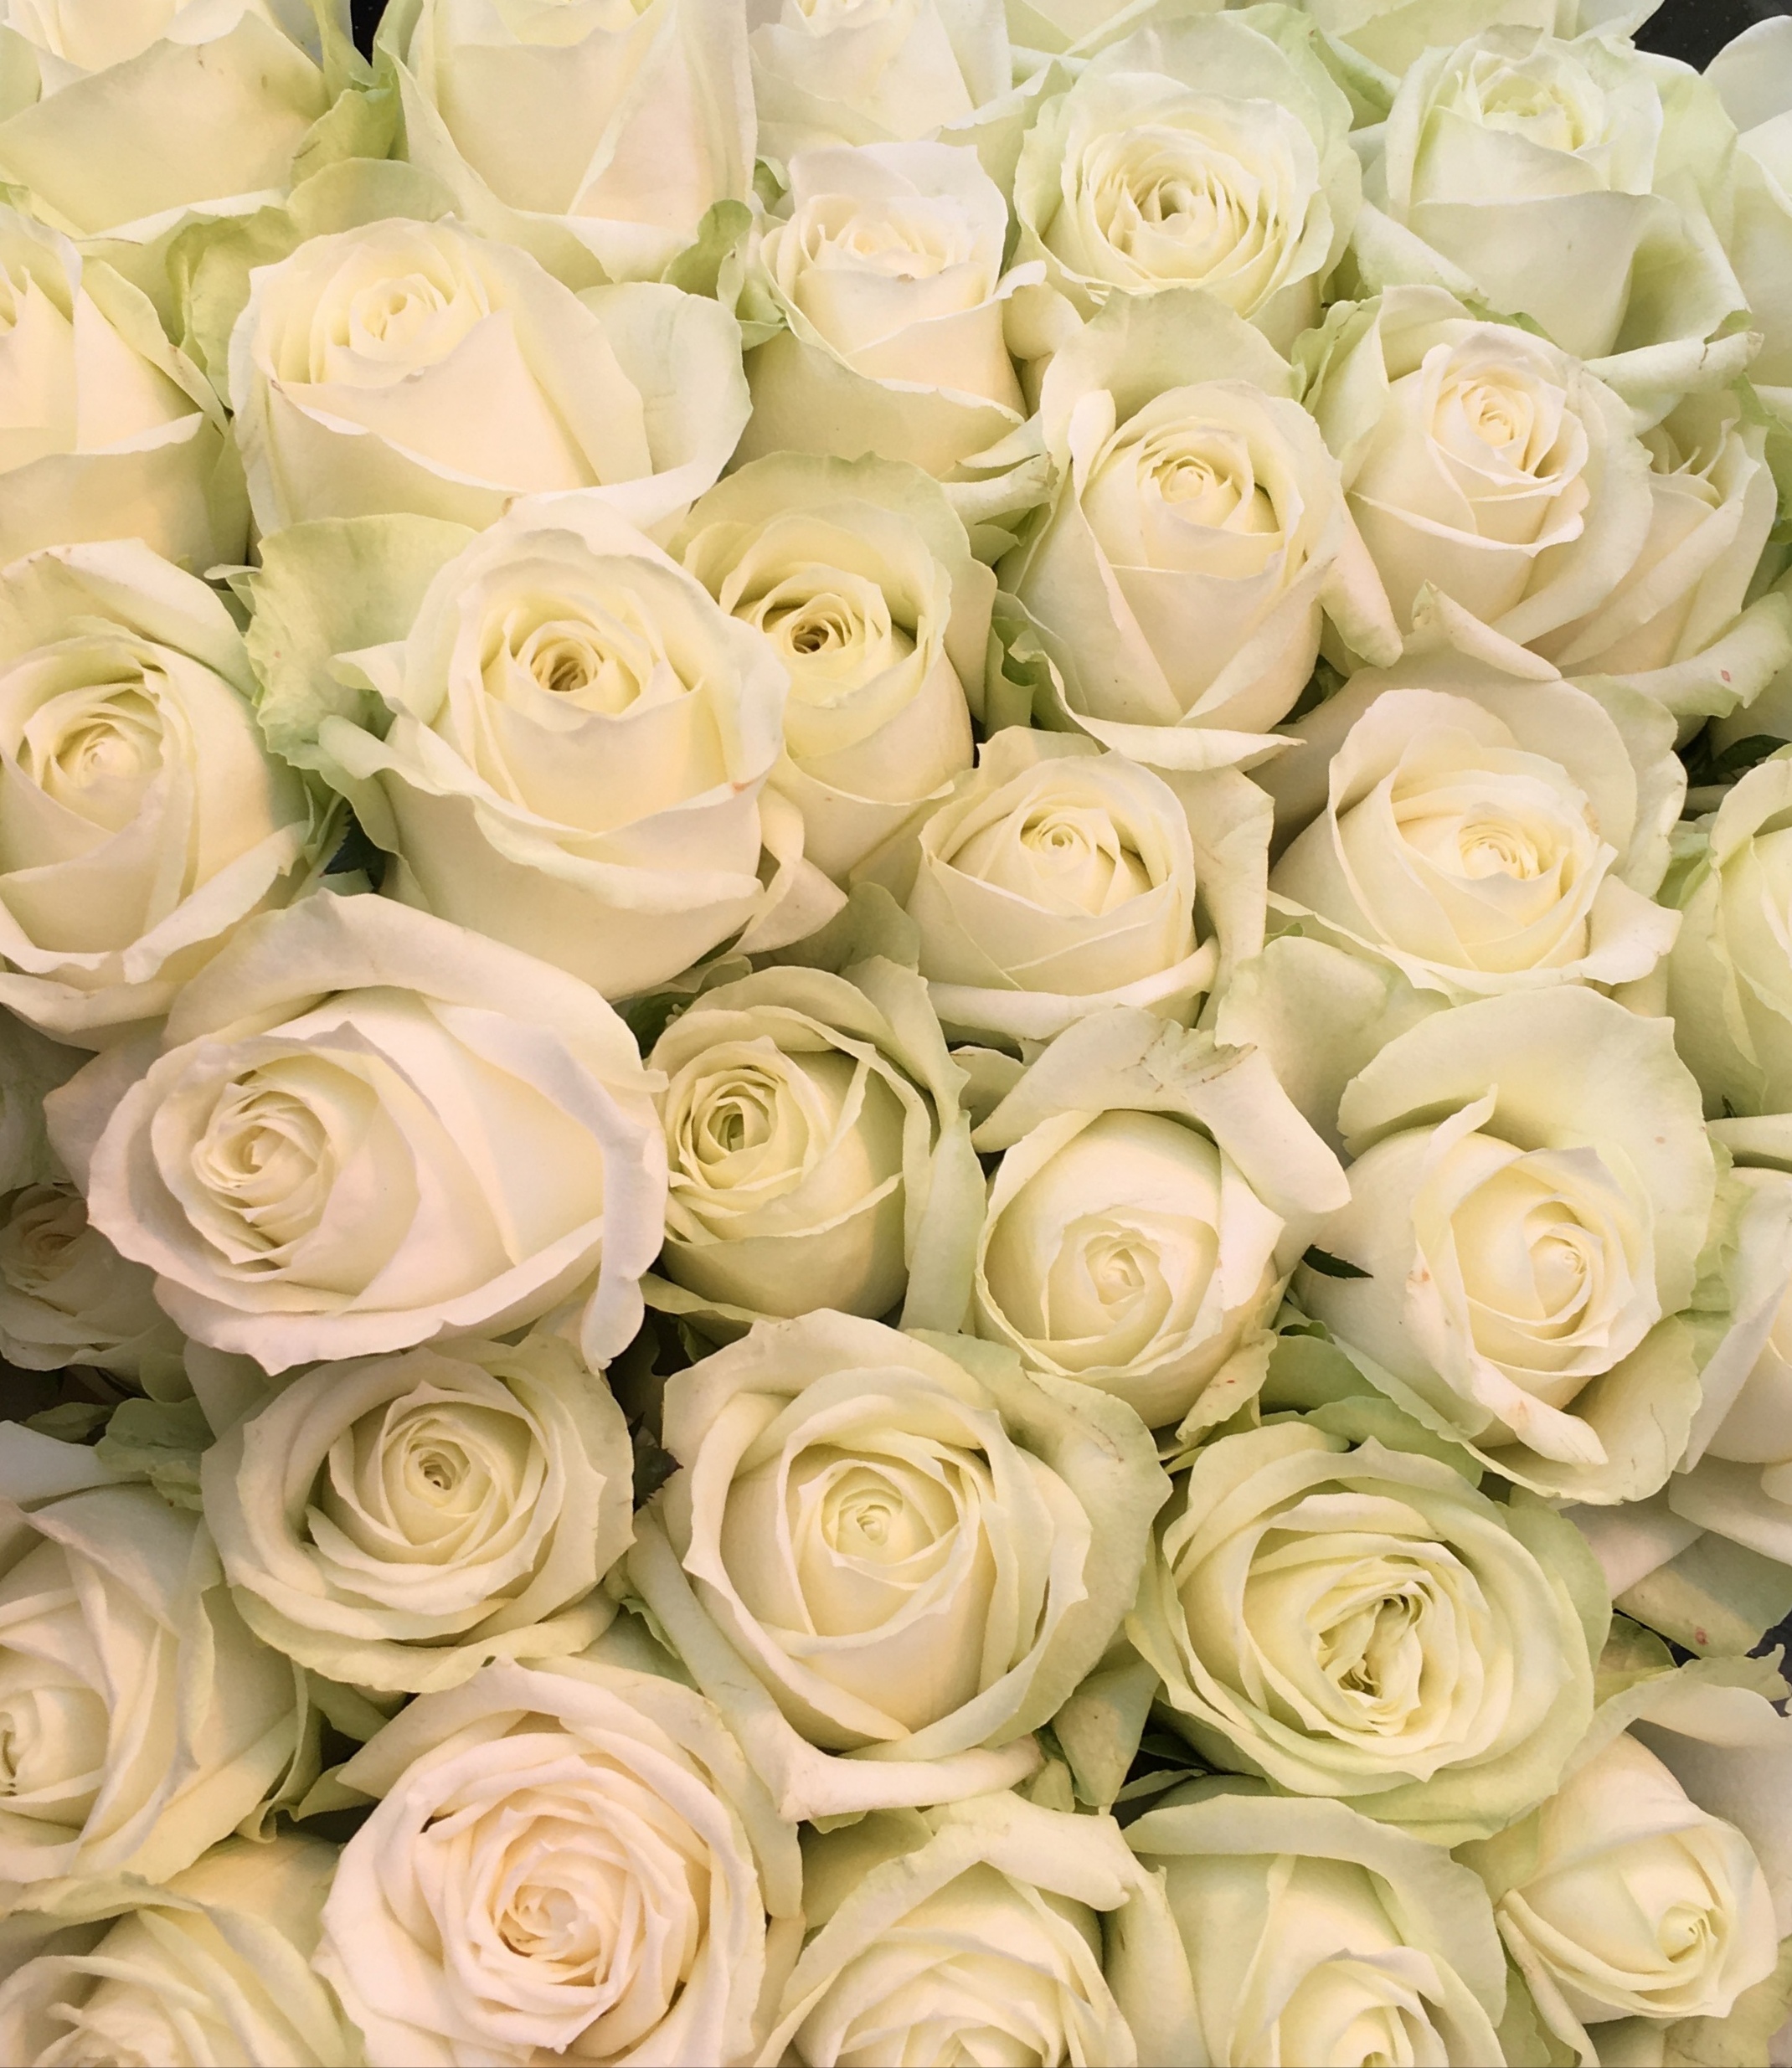 花屋 Hanaya Whiterose 私はあなたにふさわしい 100本のバラ 100 の愛情 特別な花束 福岡県北九州市小倉北区のフラワーショップです フラワースタンド バルーン フラワーアレンジメント 胡蝶蘭などギフト商品も取り扱っております